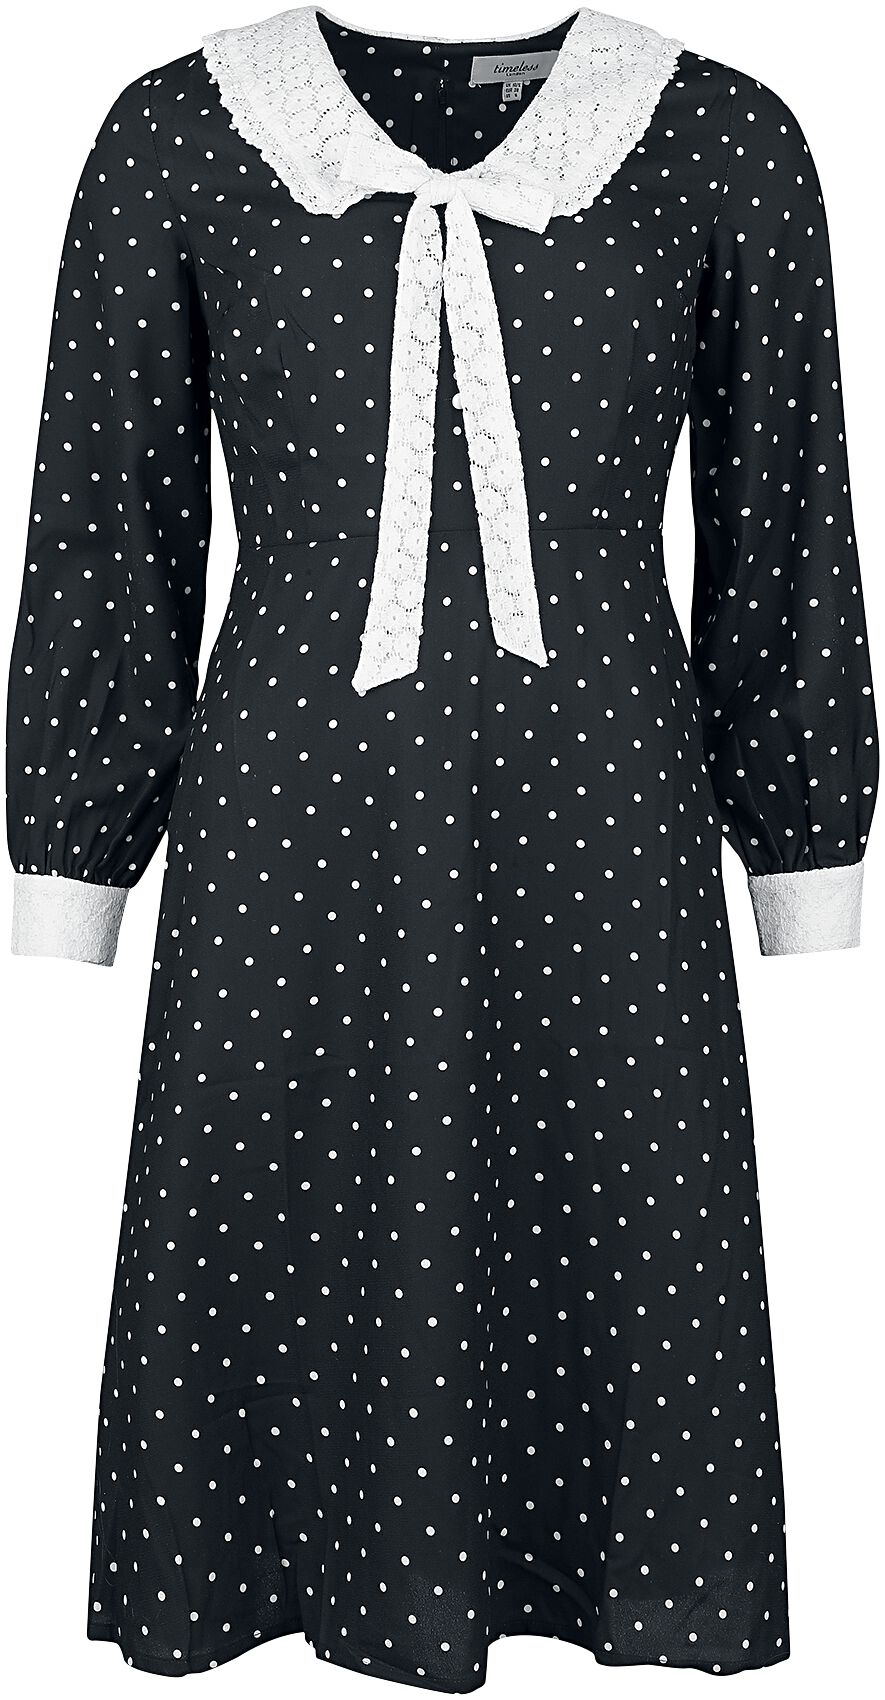 Timeless London - Rockabilly Kleid knielang - Bow Front Dress - XS bis L - für Damen - Größe L - schwarz/weiß